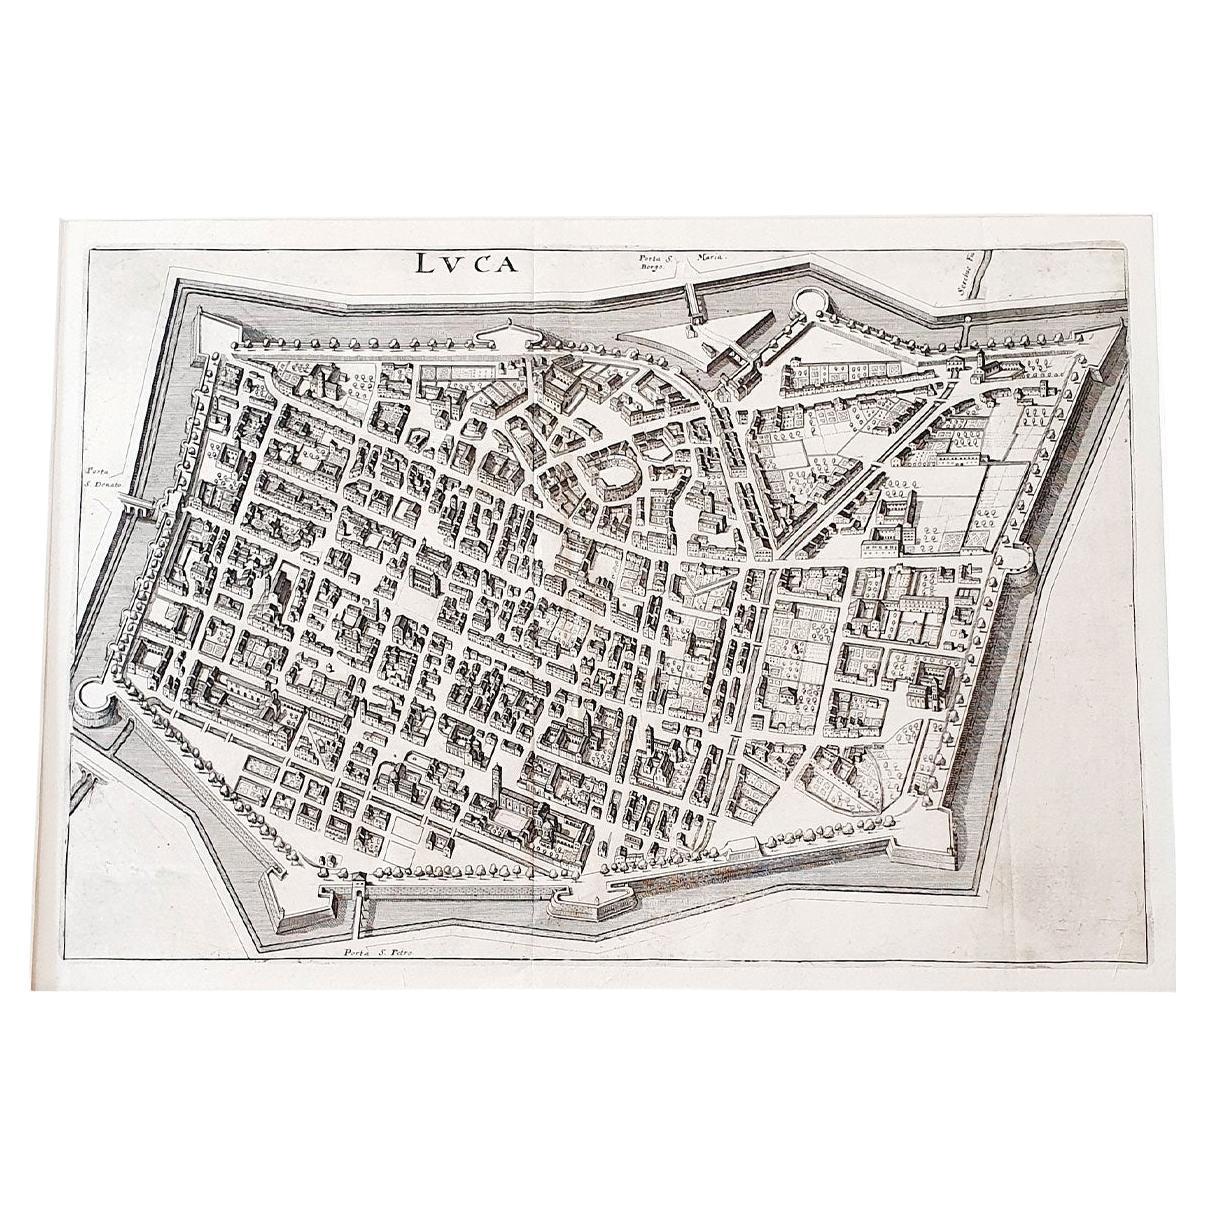 Italienische Pergamentkarte der Stadt Lucca aus dem Jahr 1640